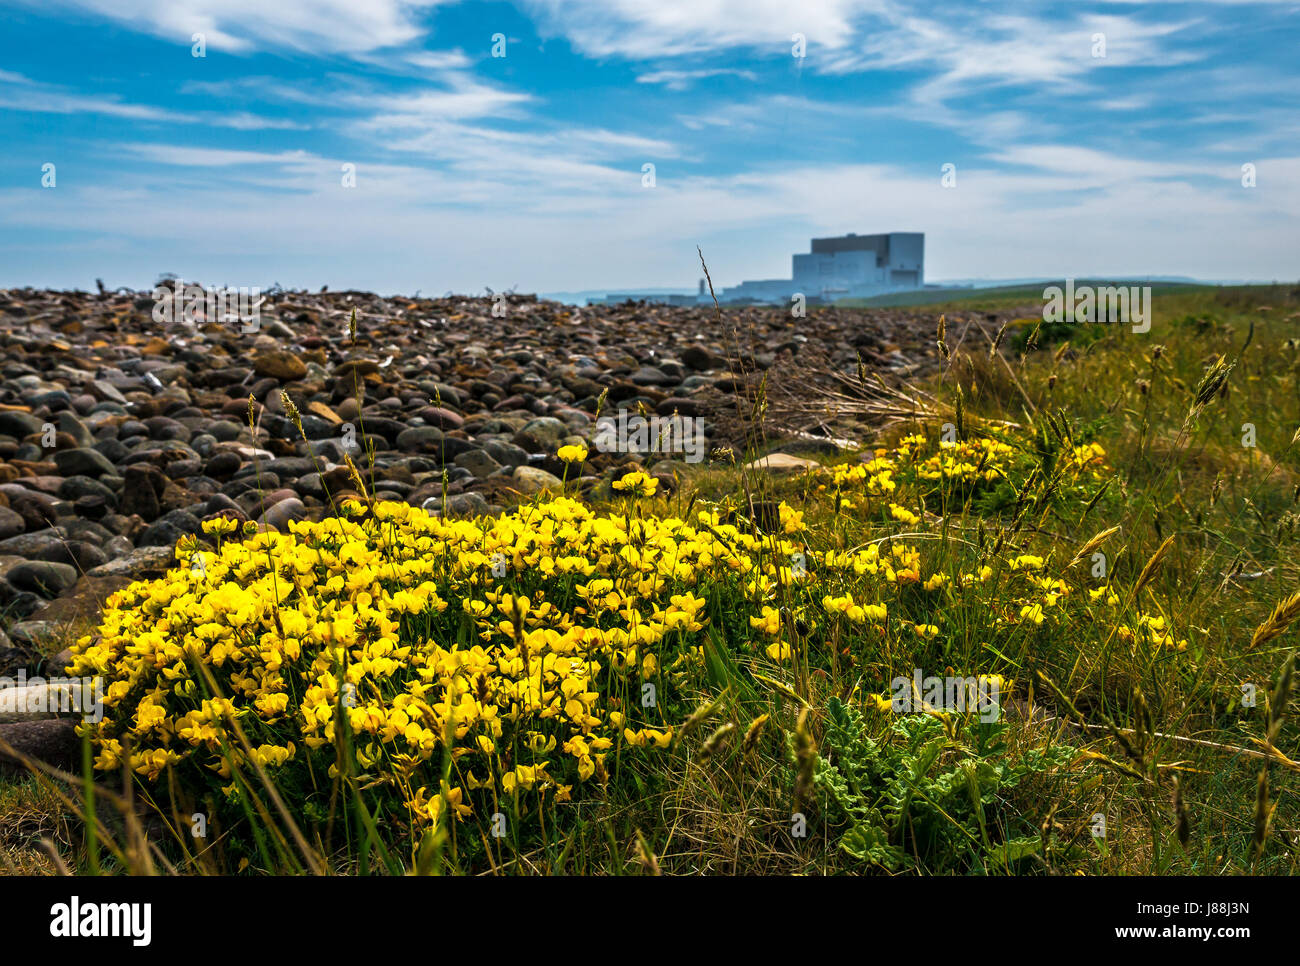 Vue au niveau du sol de lotier corniculé, Lotus corniculatus, John Muir Chemin chemin côtier, avec la centrale nucléaire de Torness, East Lothian, Scotland, UK Banque D'Images